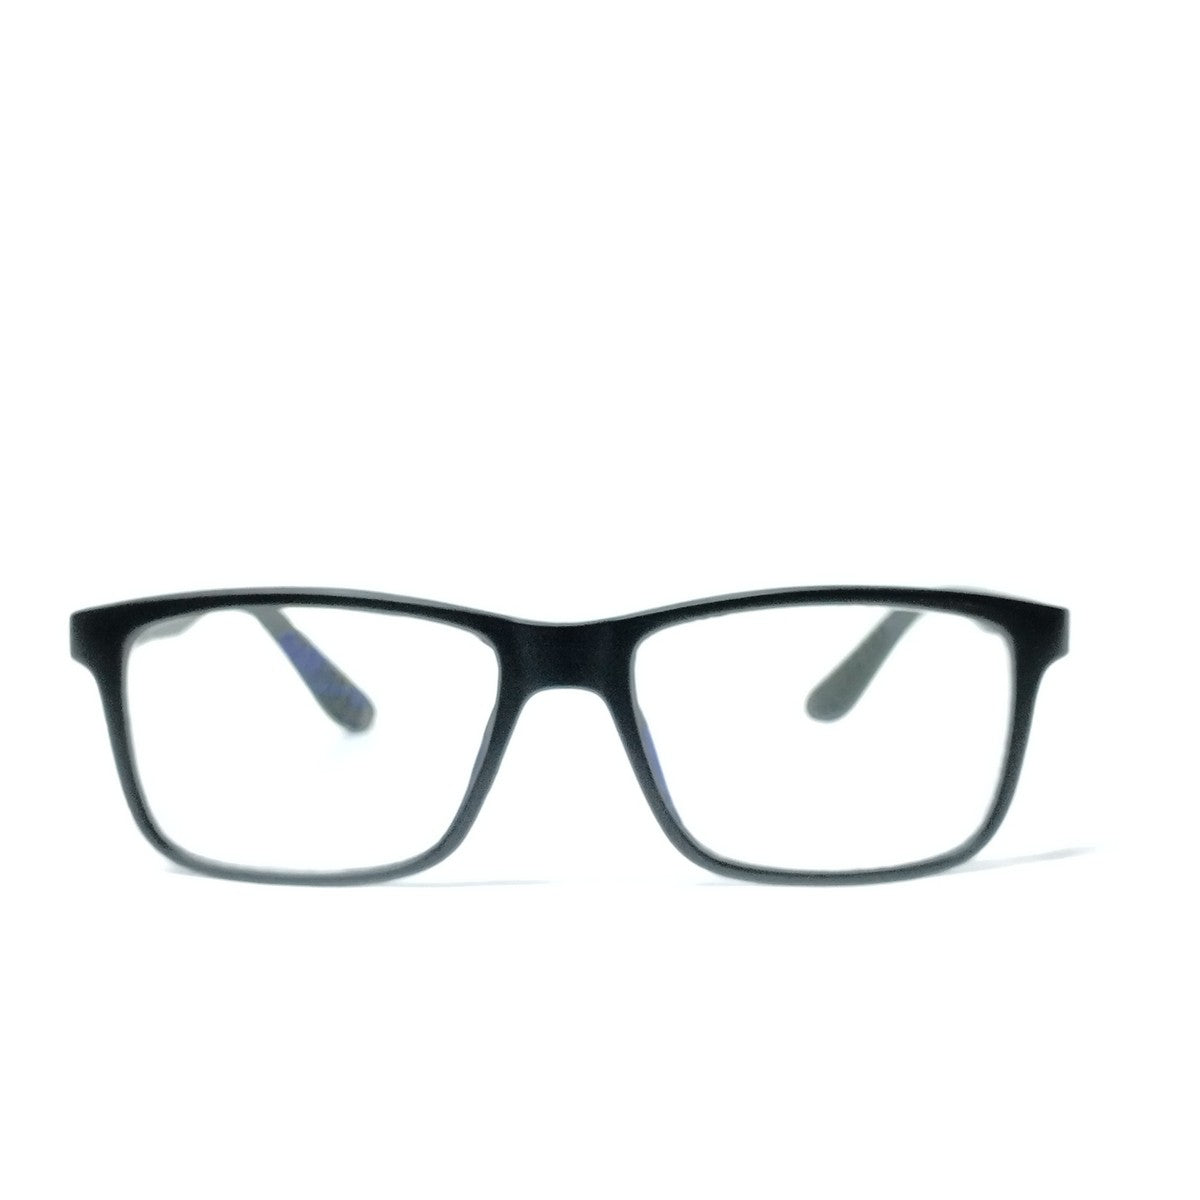 Black Rectangle Progressive Glasses for Computers Multifocal Reading Glasses for Men Women